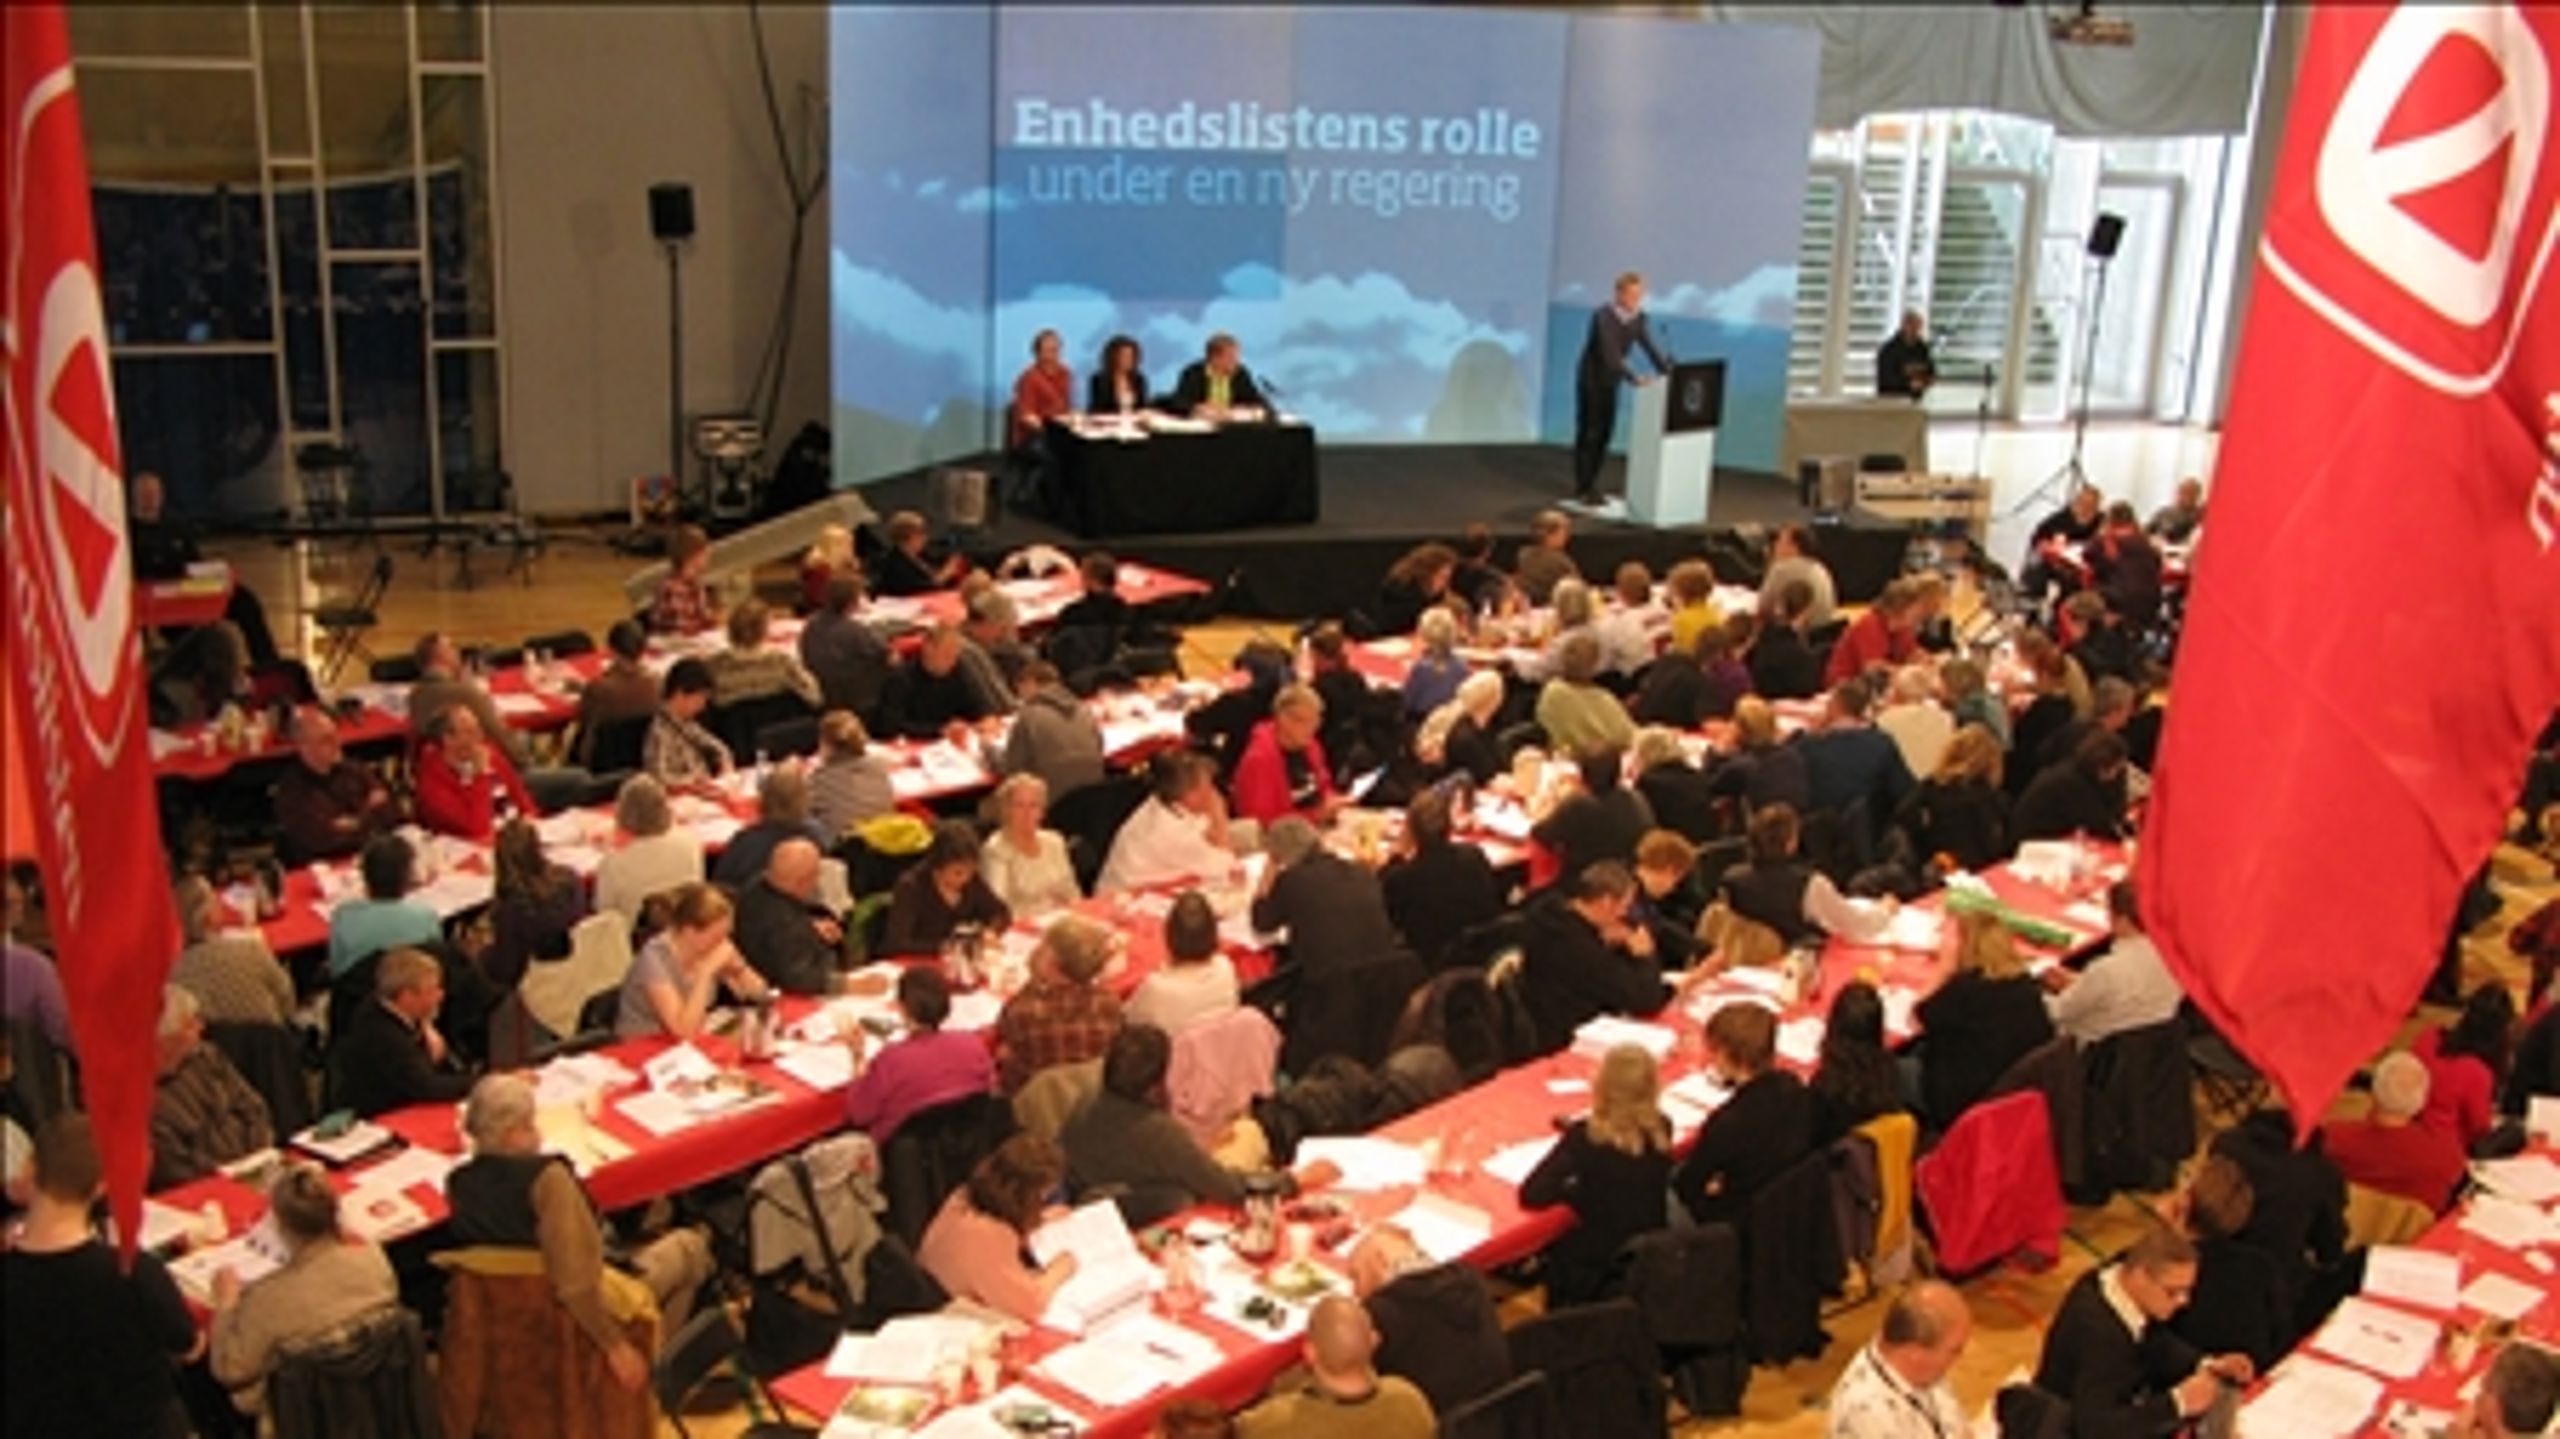 Enhedslisten holder landsmøde i Korsgadehallen på Nørrebro.